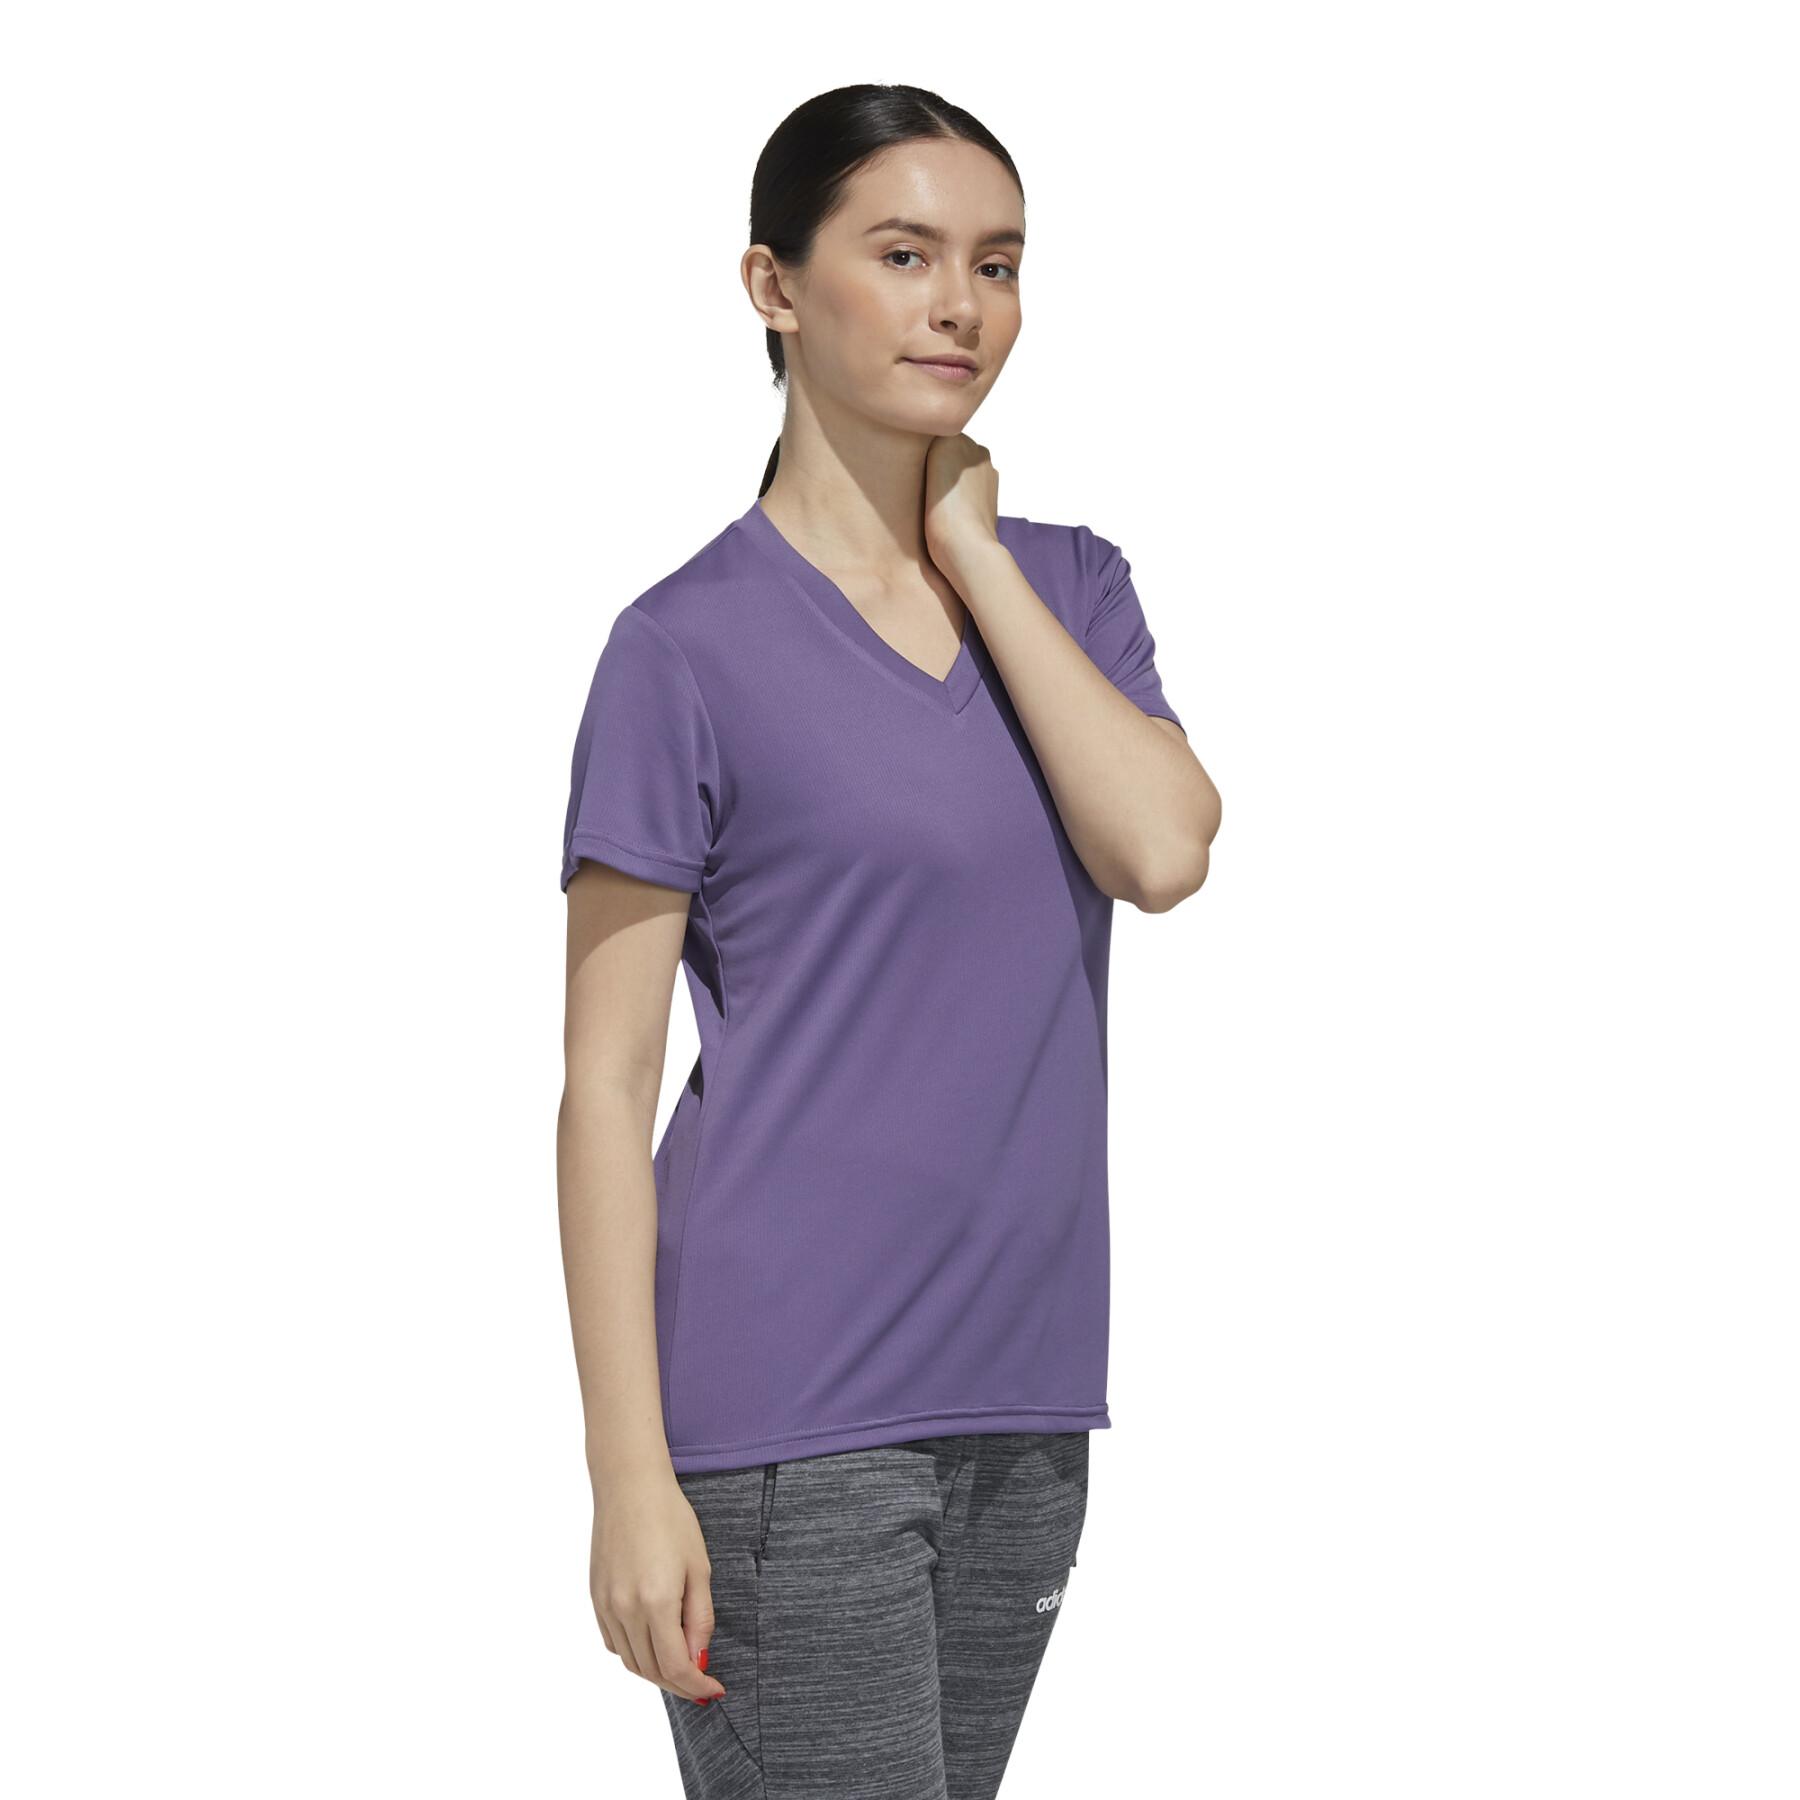 T-shirt för kvinnor adidas Designed 2 Move Solid